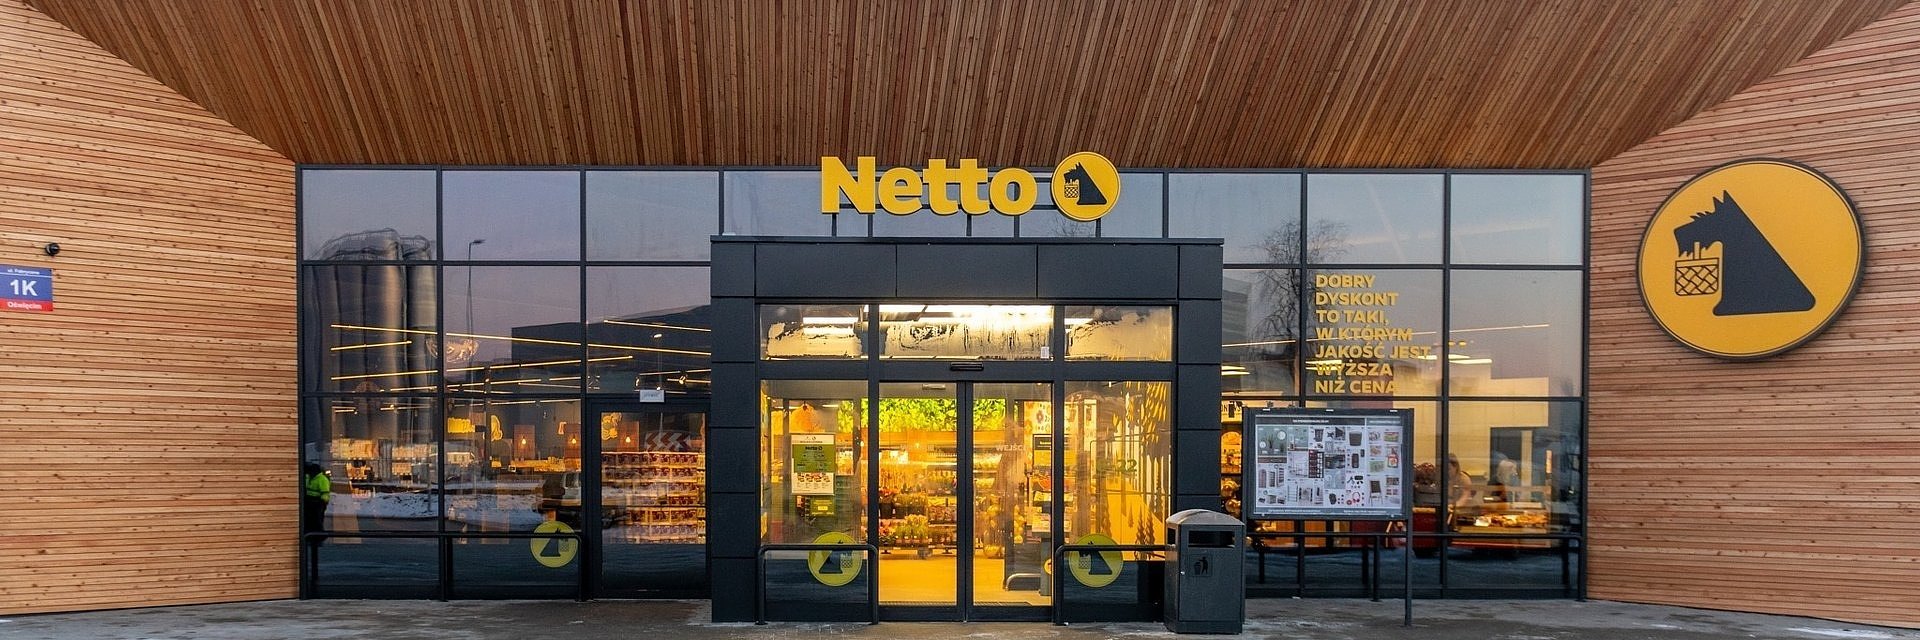 Netto przebudowuje 7 obiektów w różnych lokalizacjach